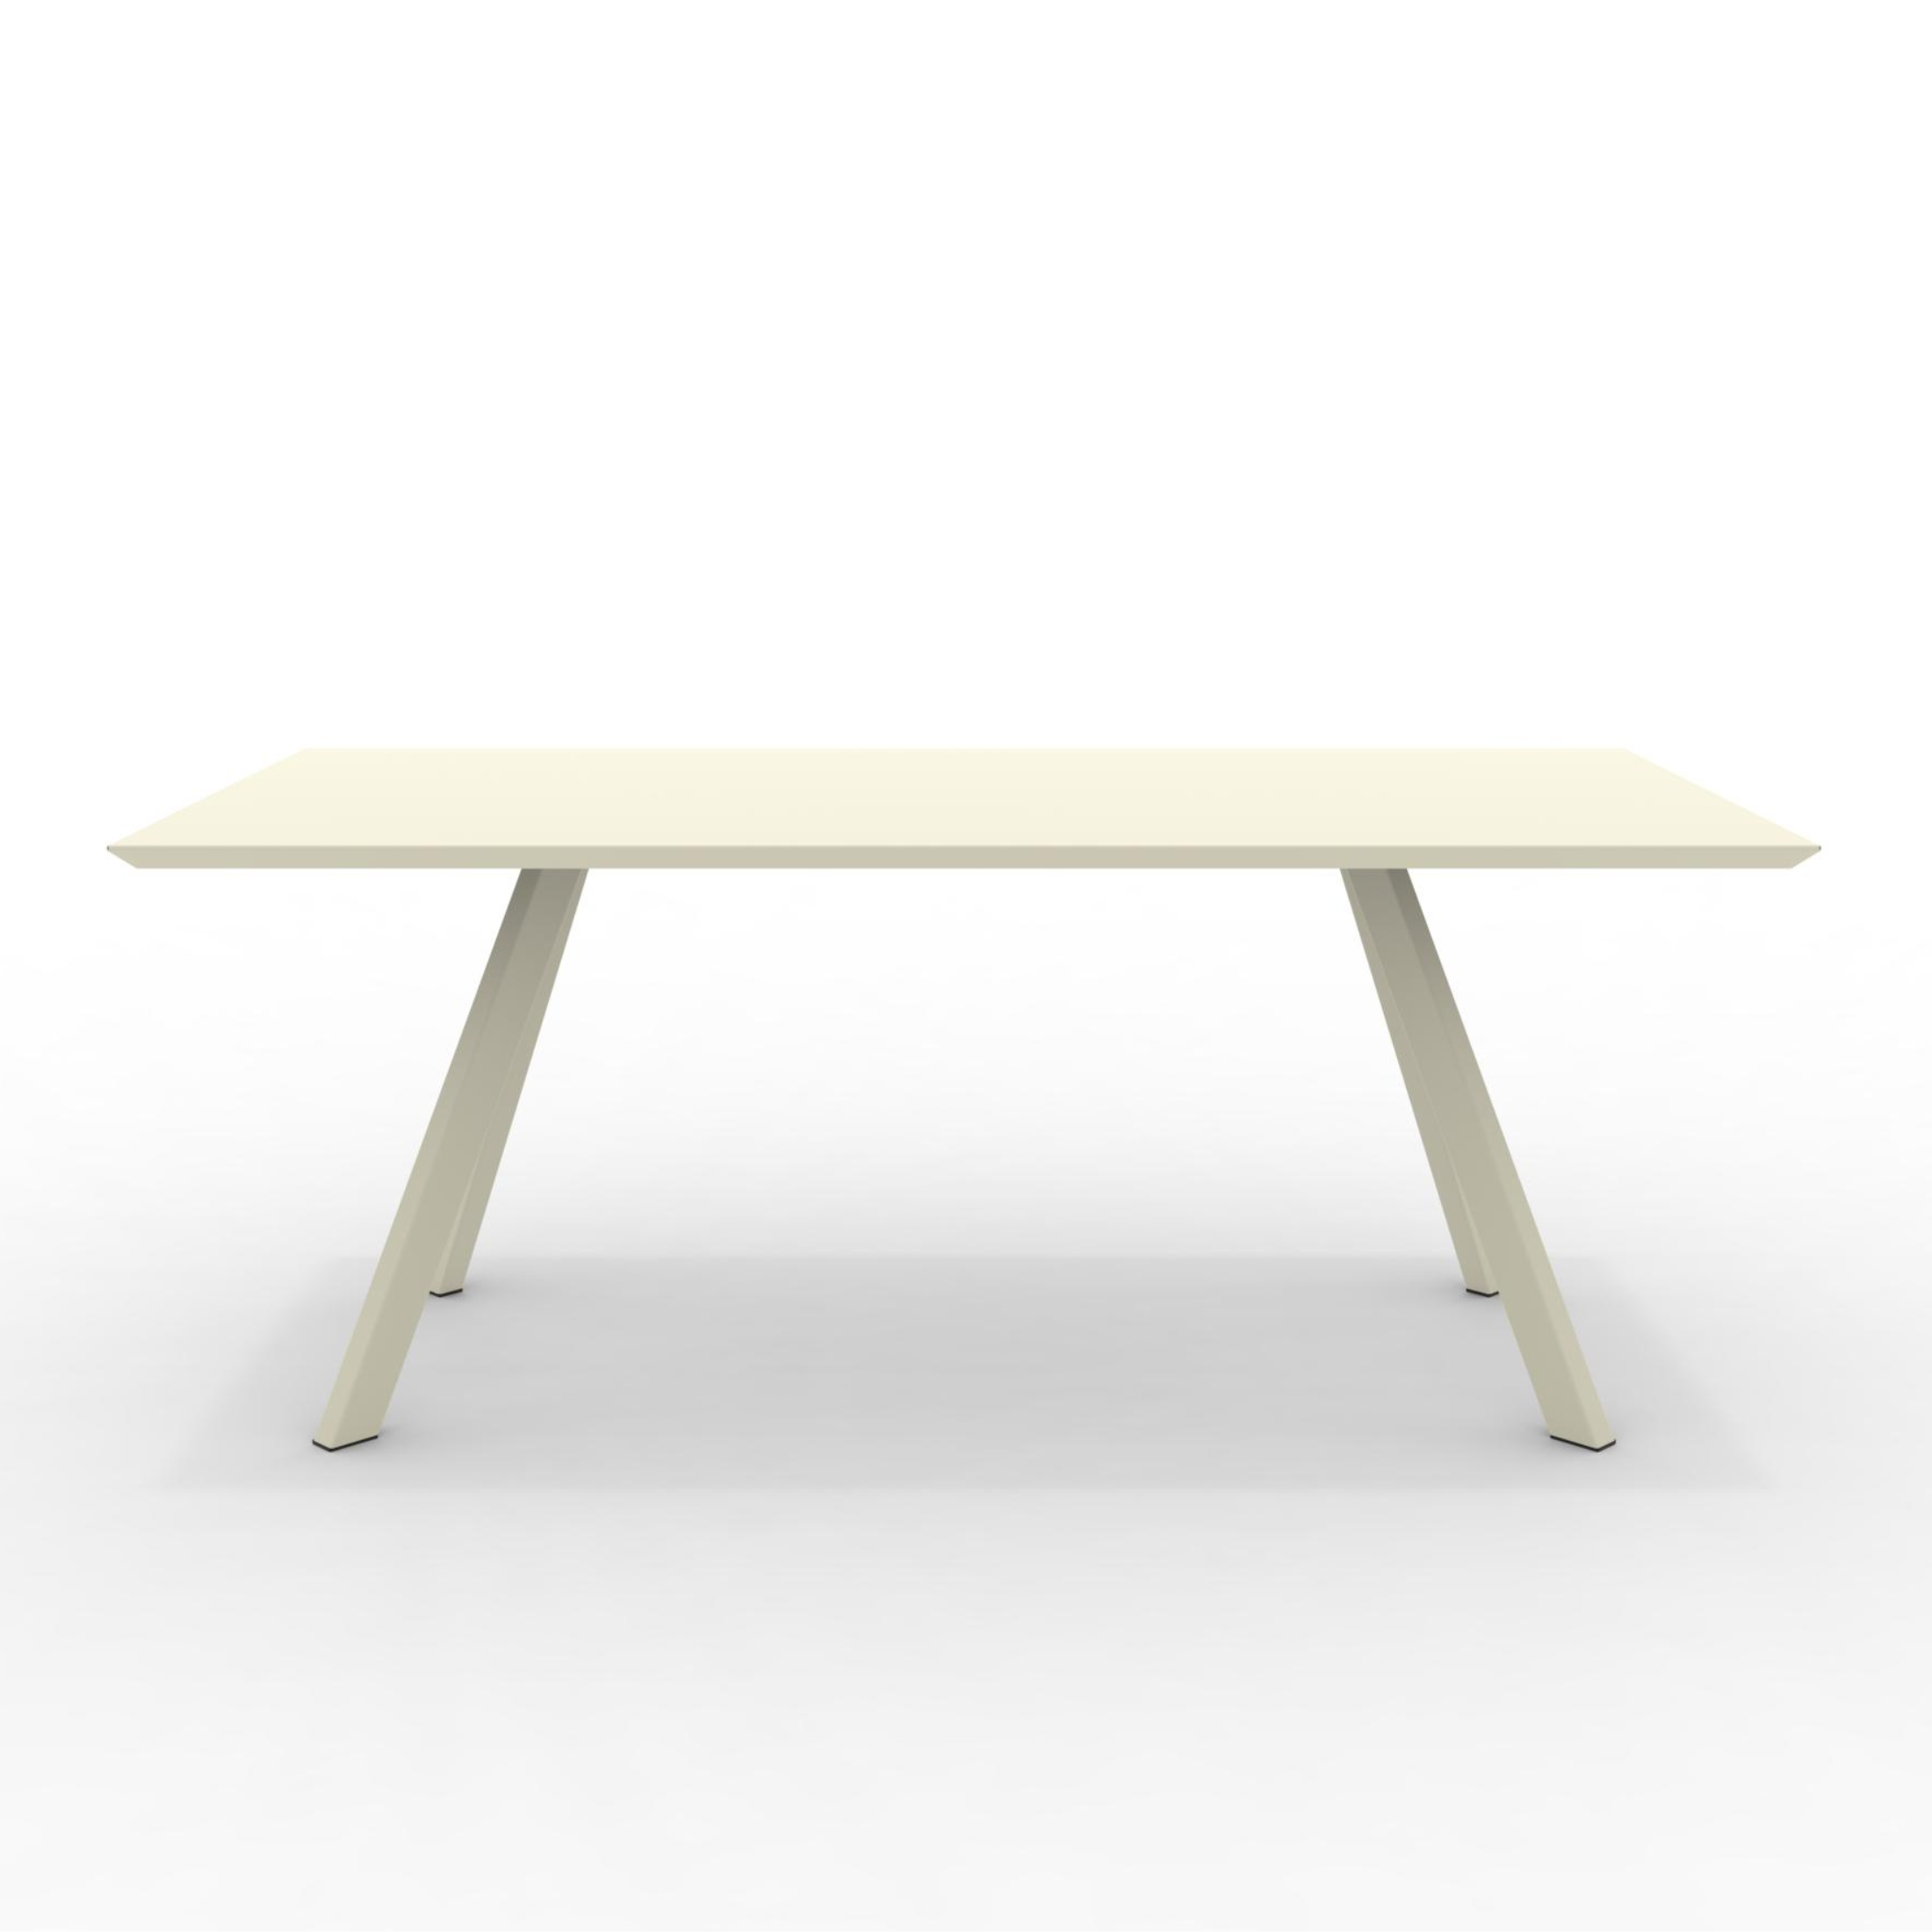 Table extensible en métal peint "Daisy9" pour jardin moderne 220/320x100 cm 75h